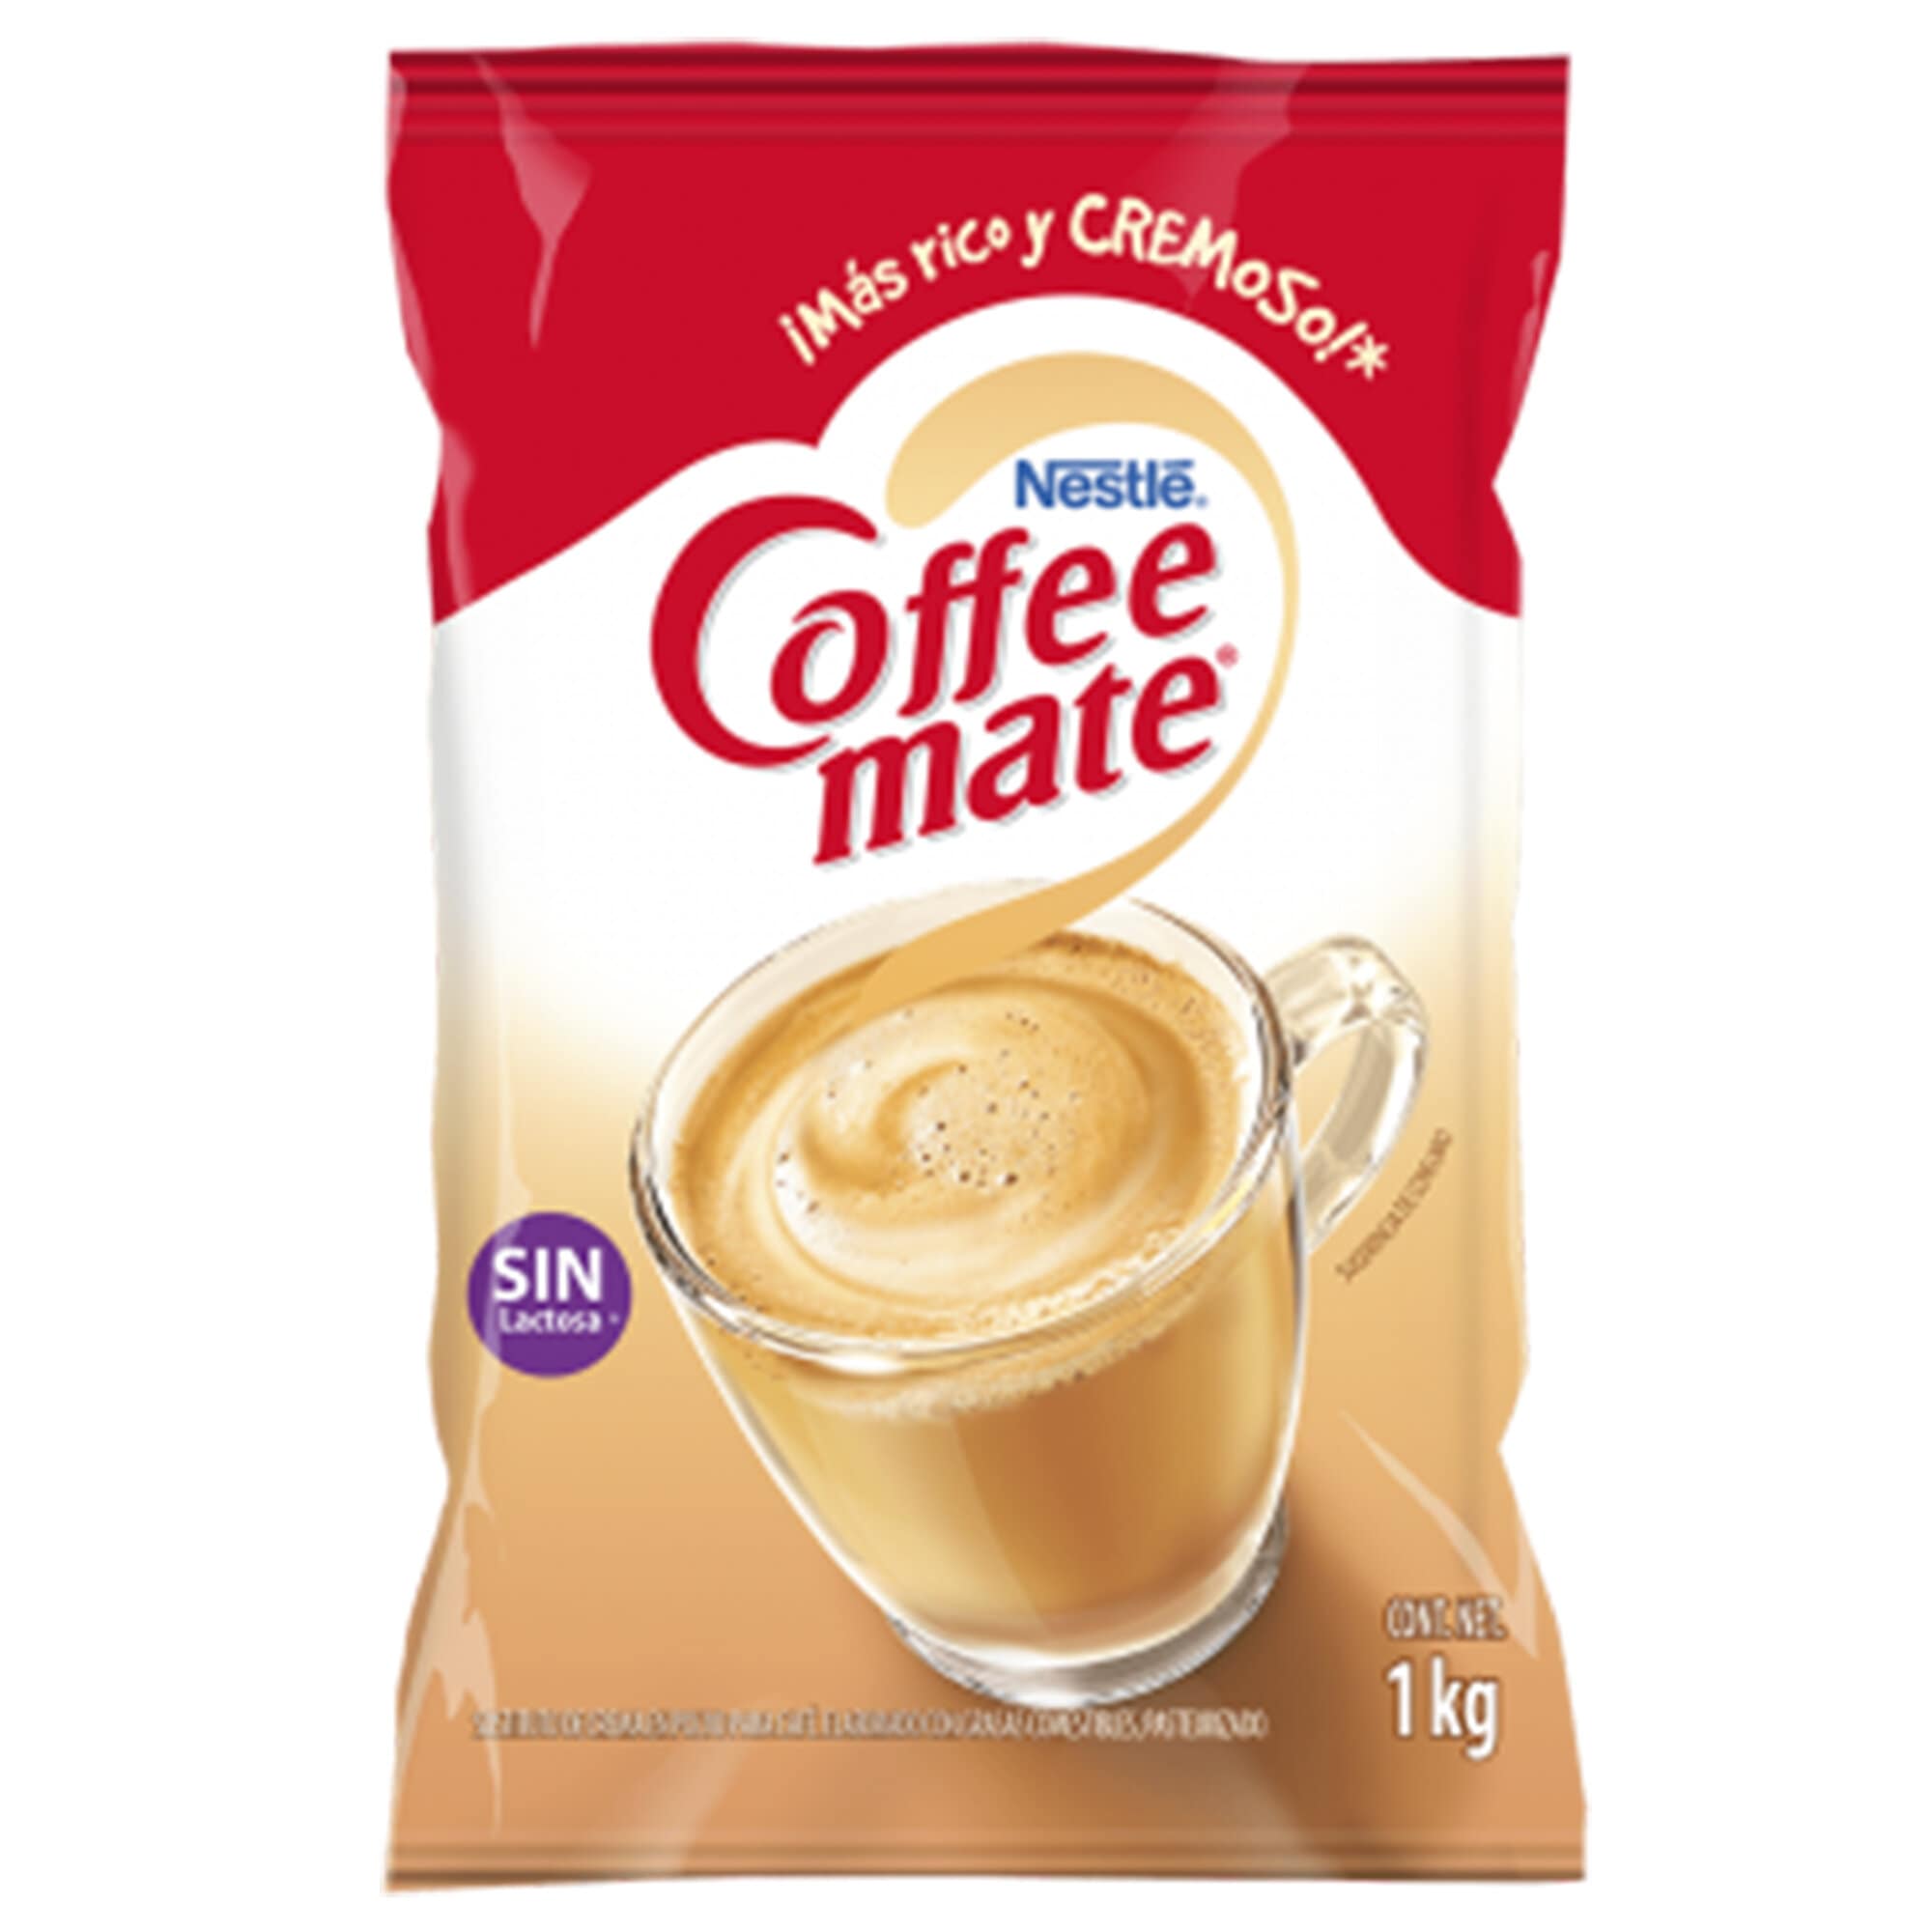 SUSTITUTO DE CREMA
COFFE MATE 1KG BOLSA